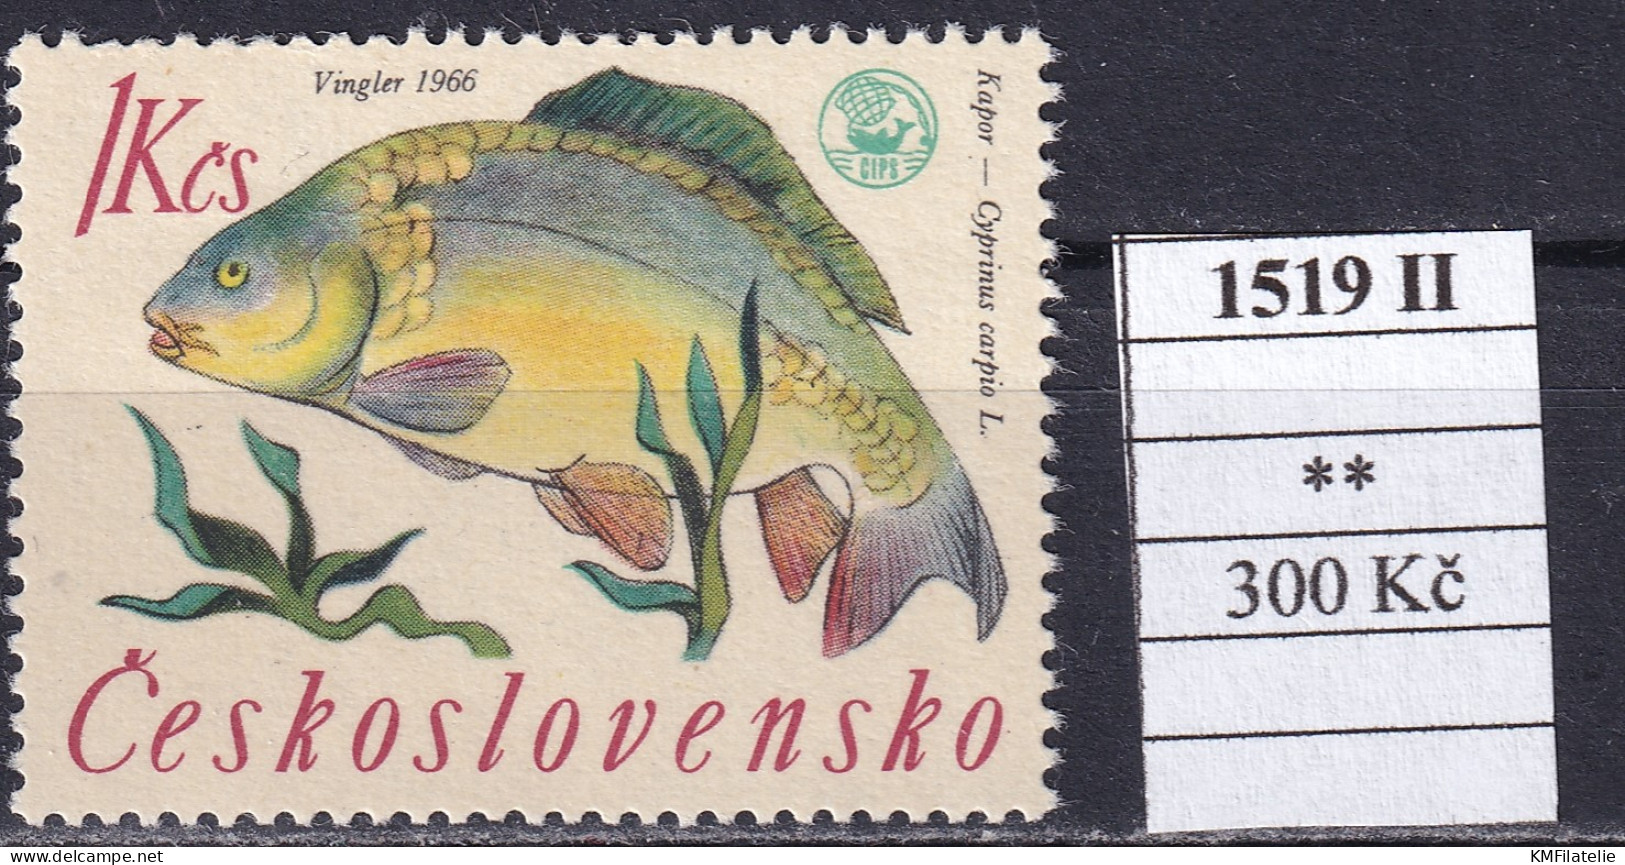 Czechoslovakia Pofis 1519 II MNH - Unused Stamps